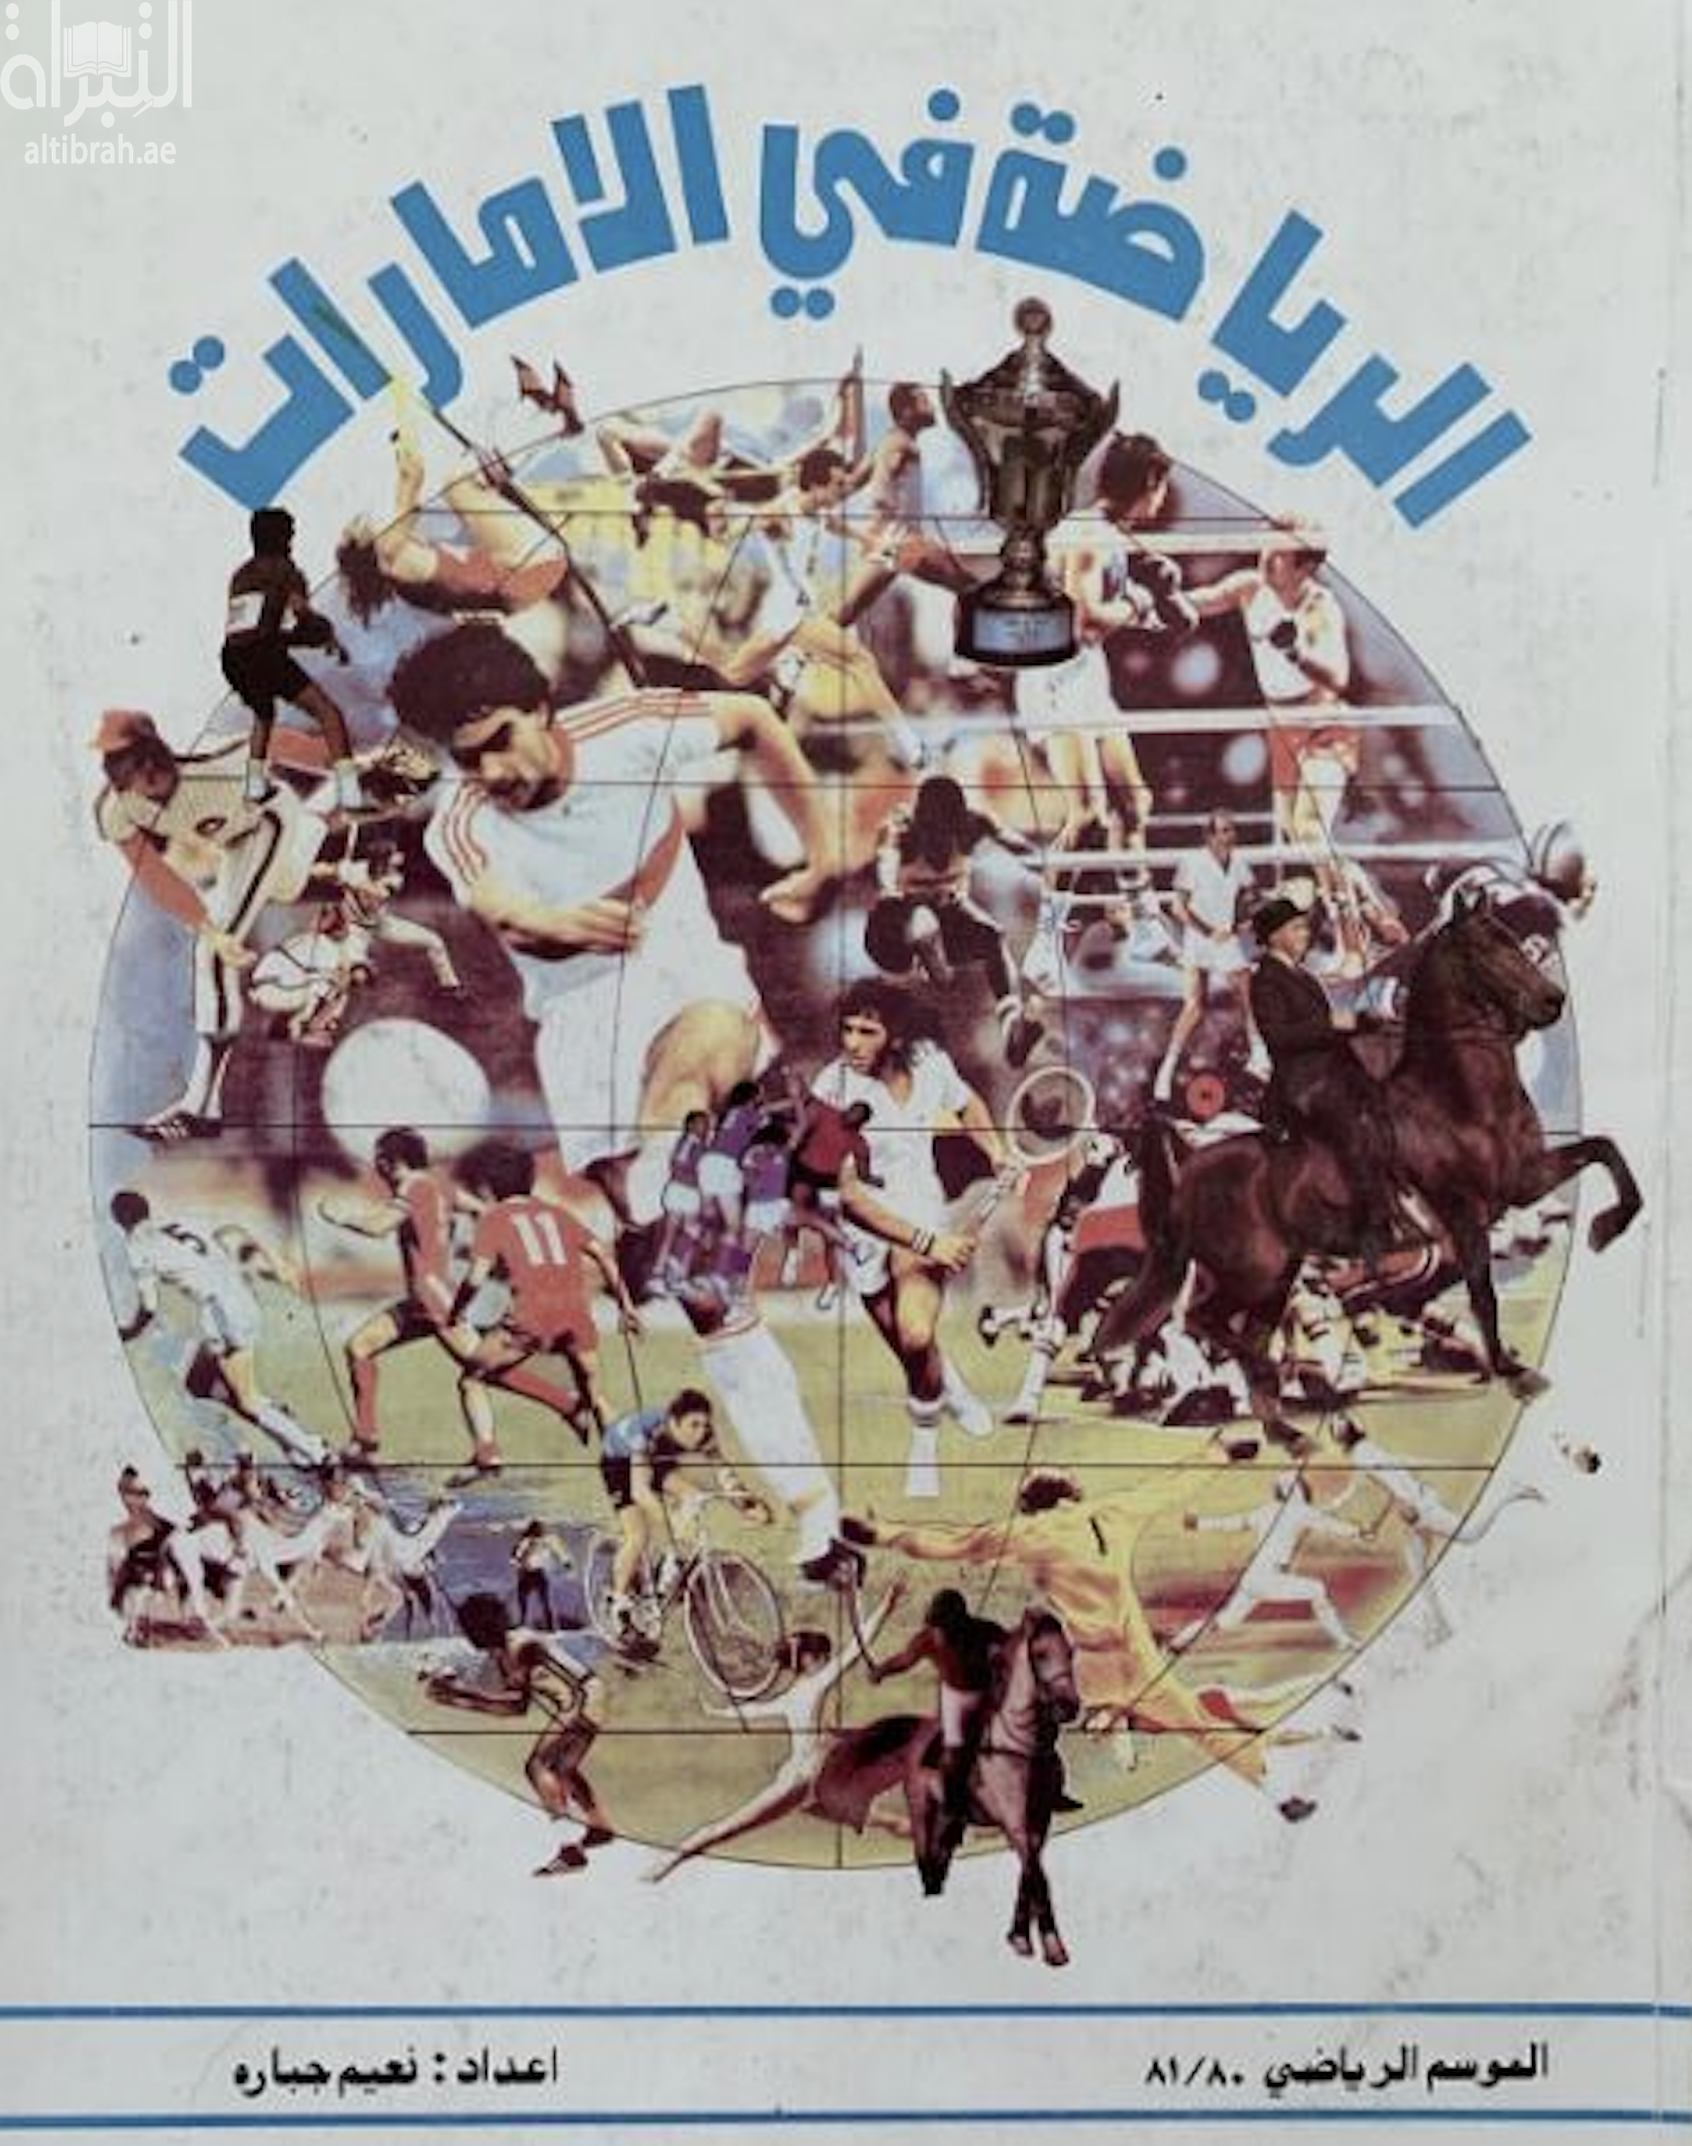 الرياضة في الإمارات - الموسم الرياضي 80 / 81